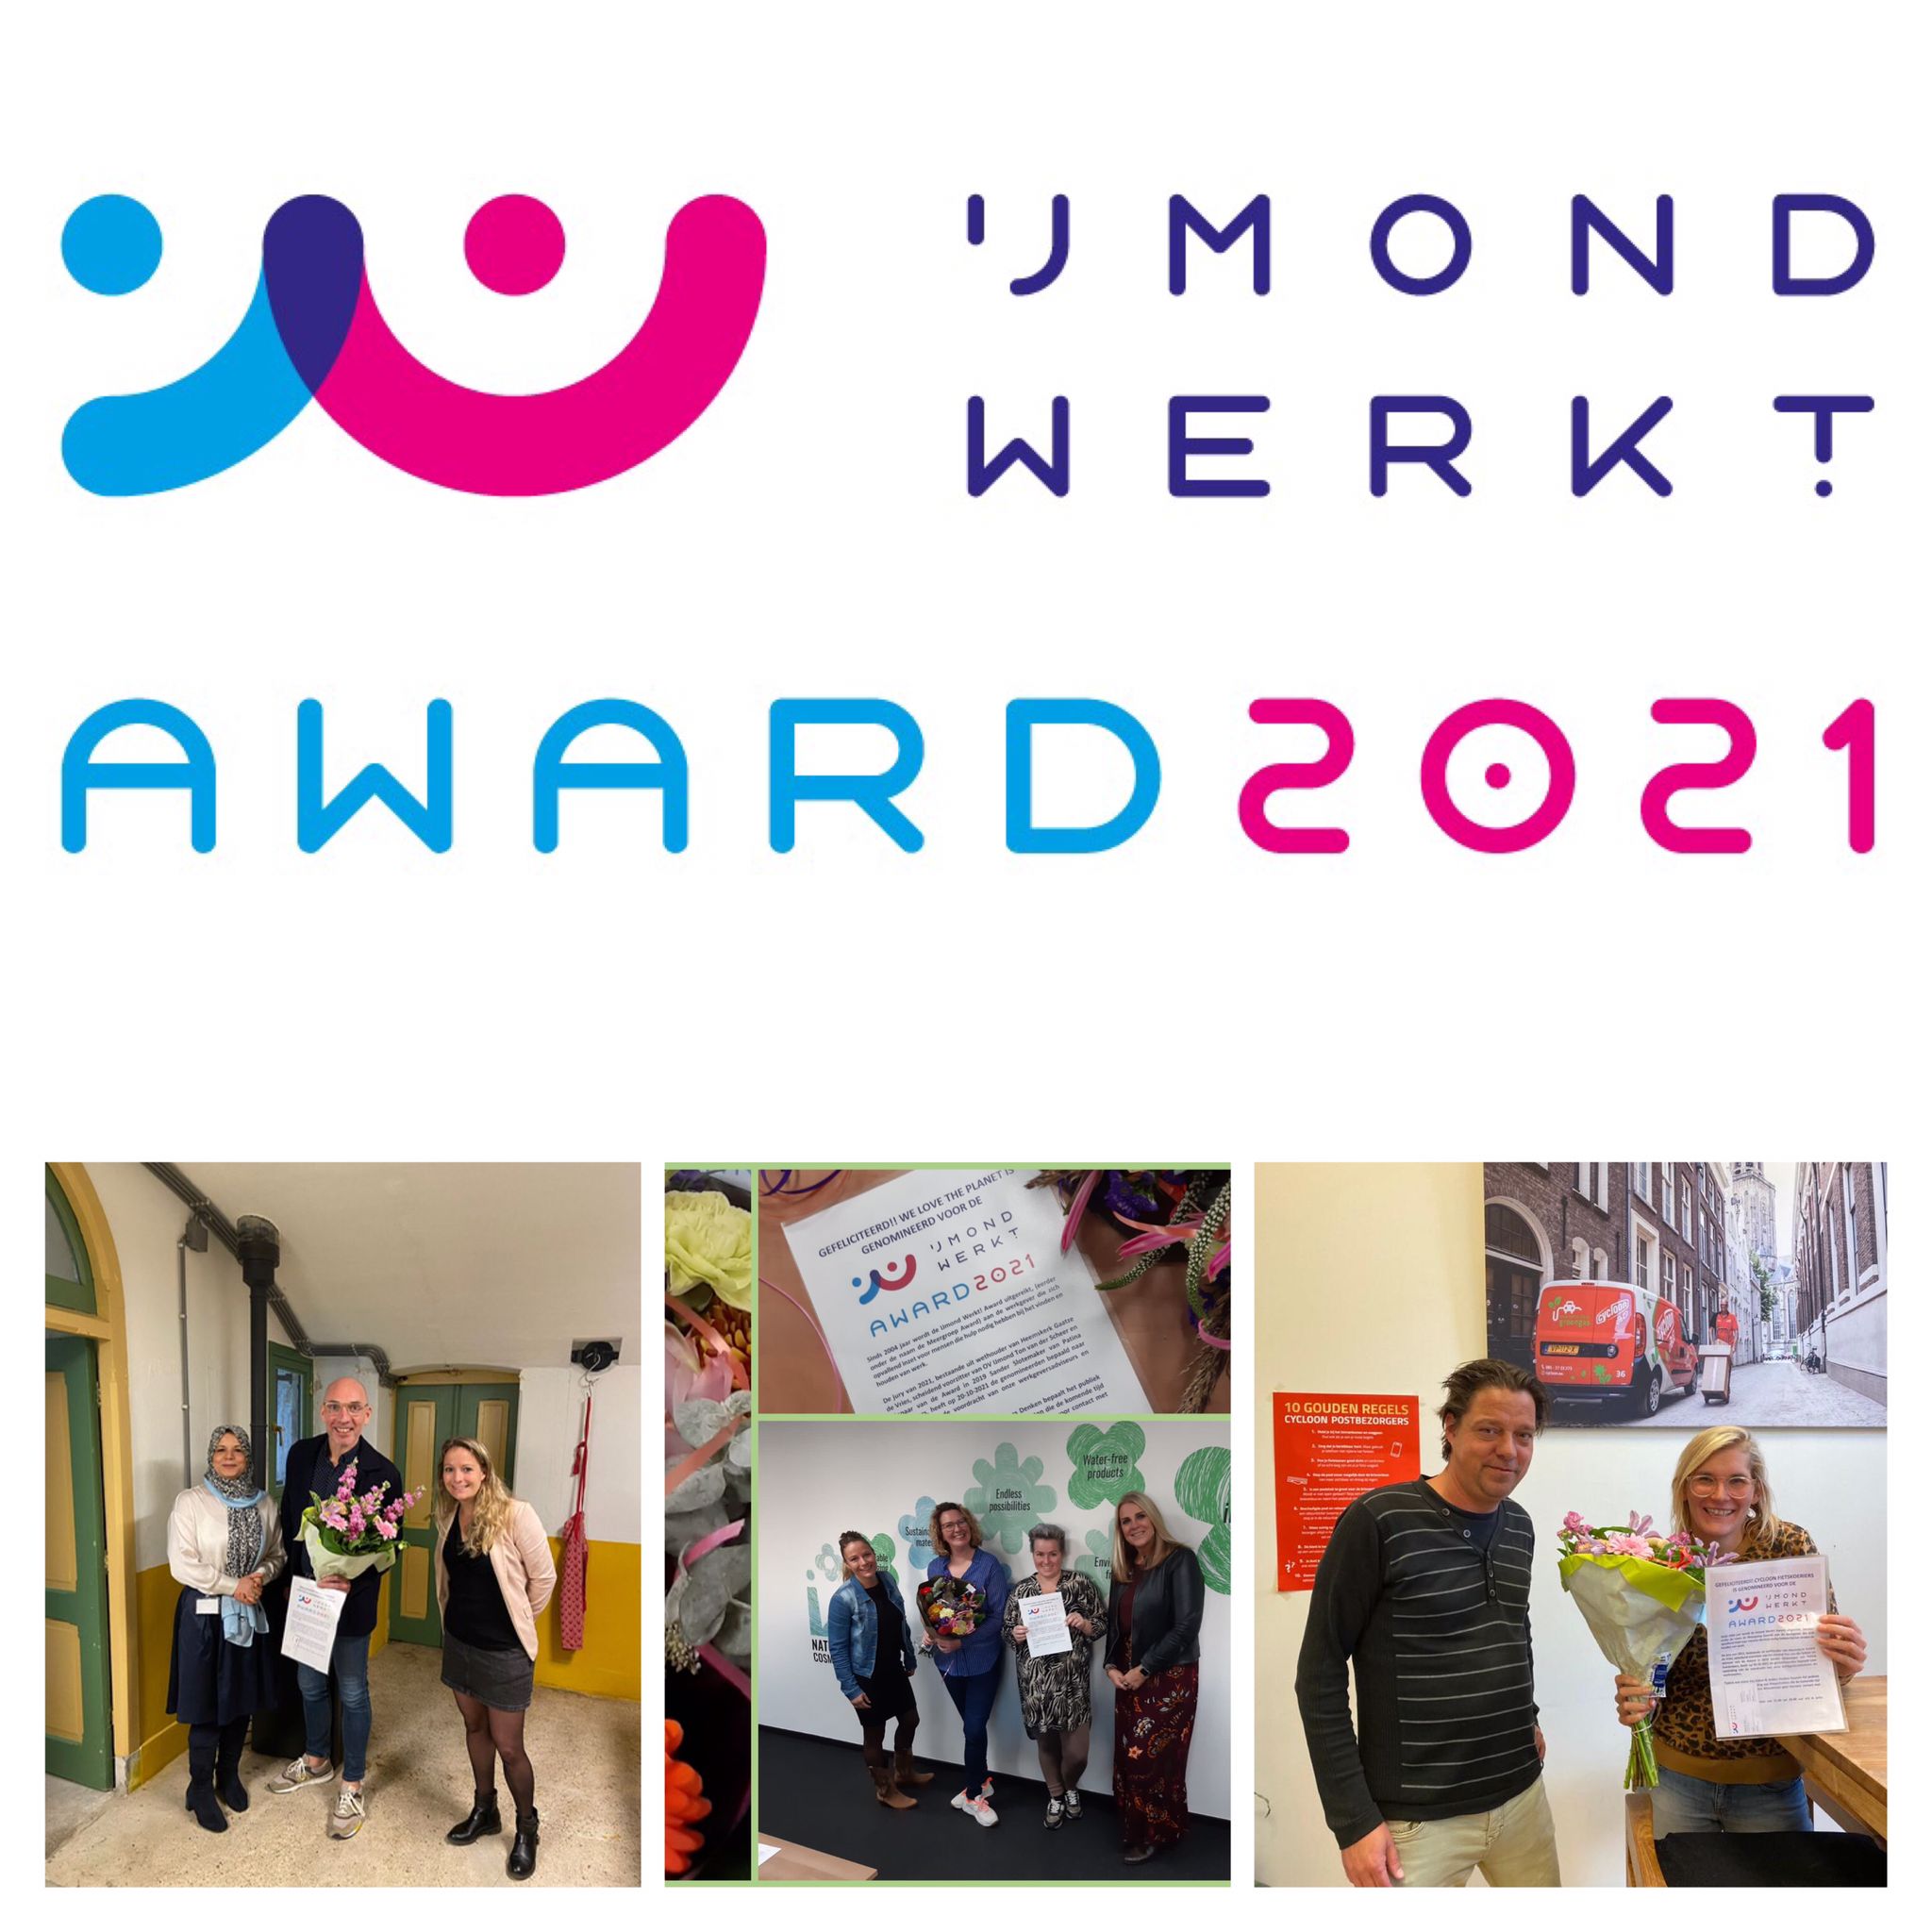 UITGESTELD NAAR 2022: Natural Cosmetics Holland, Bourgondisch Lifestyle en Cycloon Post en Fietskoeriers genomineerd voor IJmond Werkt! Award